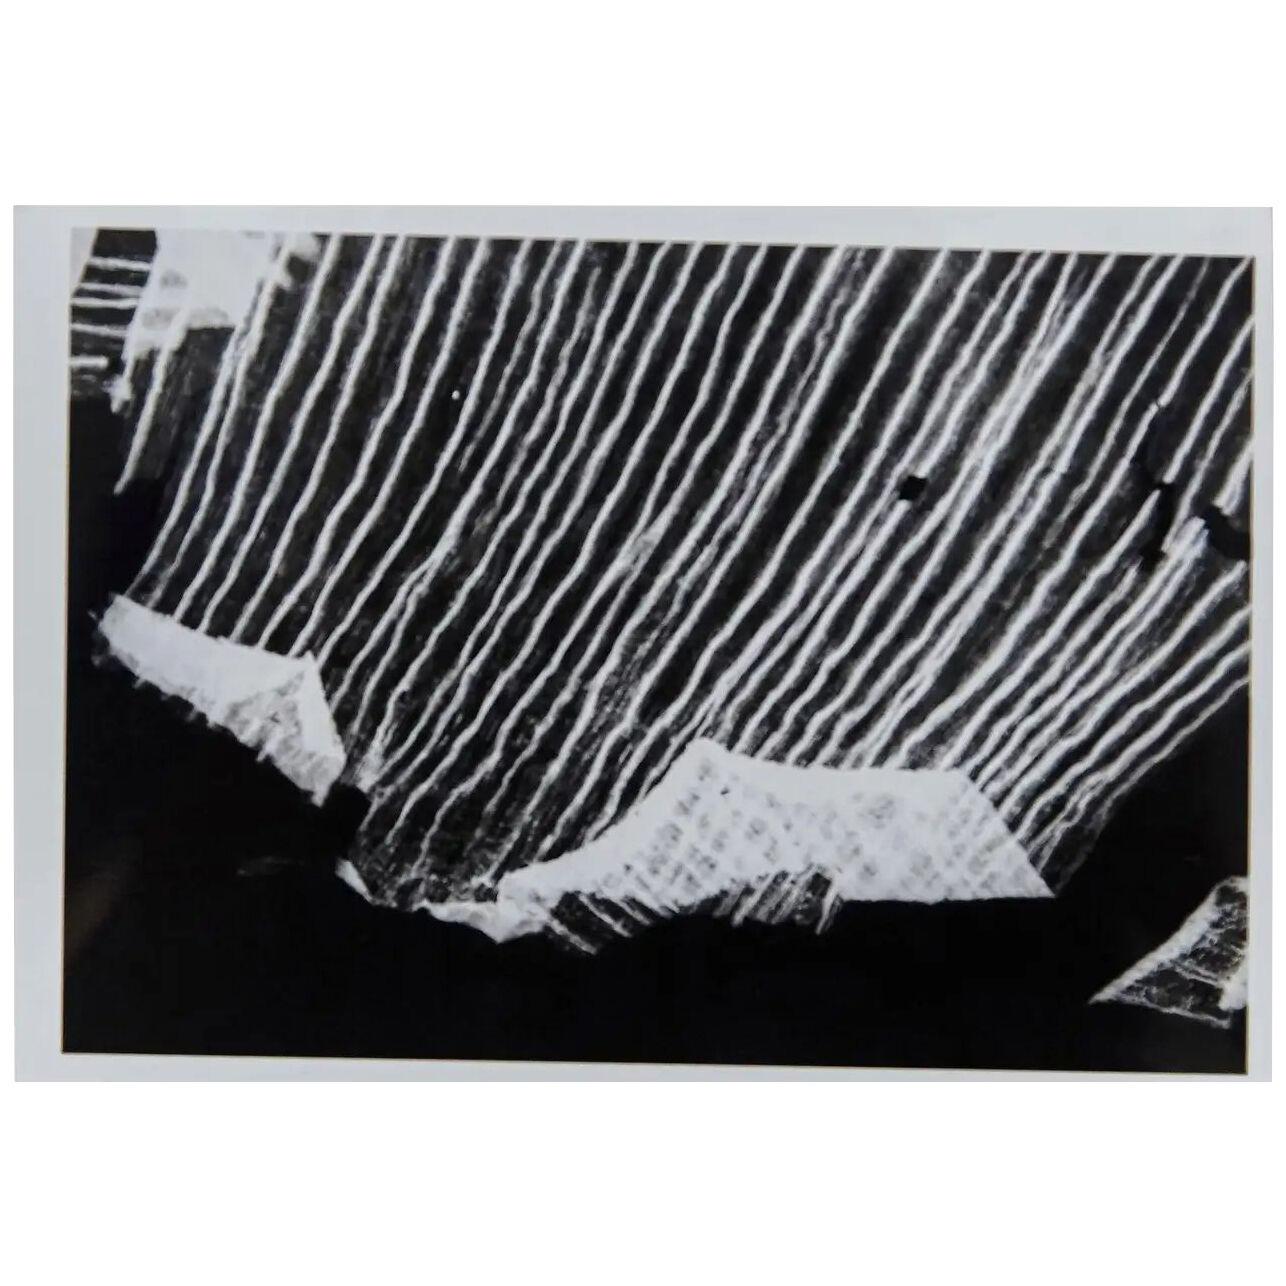 Enrico Garzaro, Flora Photogram Black and White Contemporary Photography